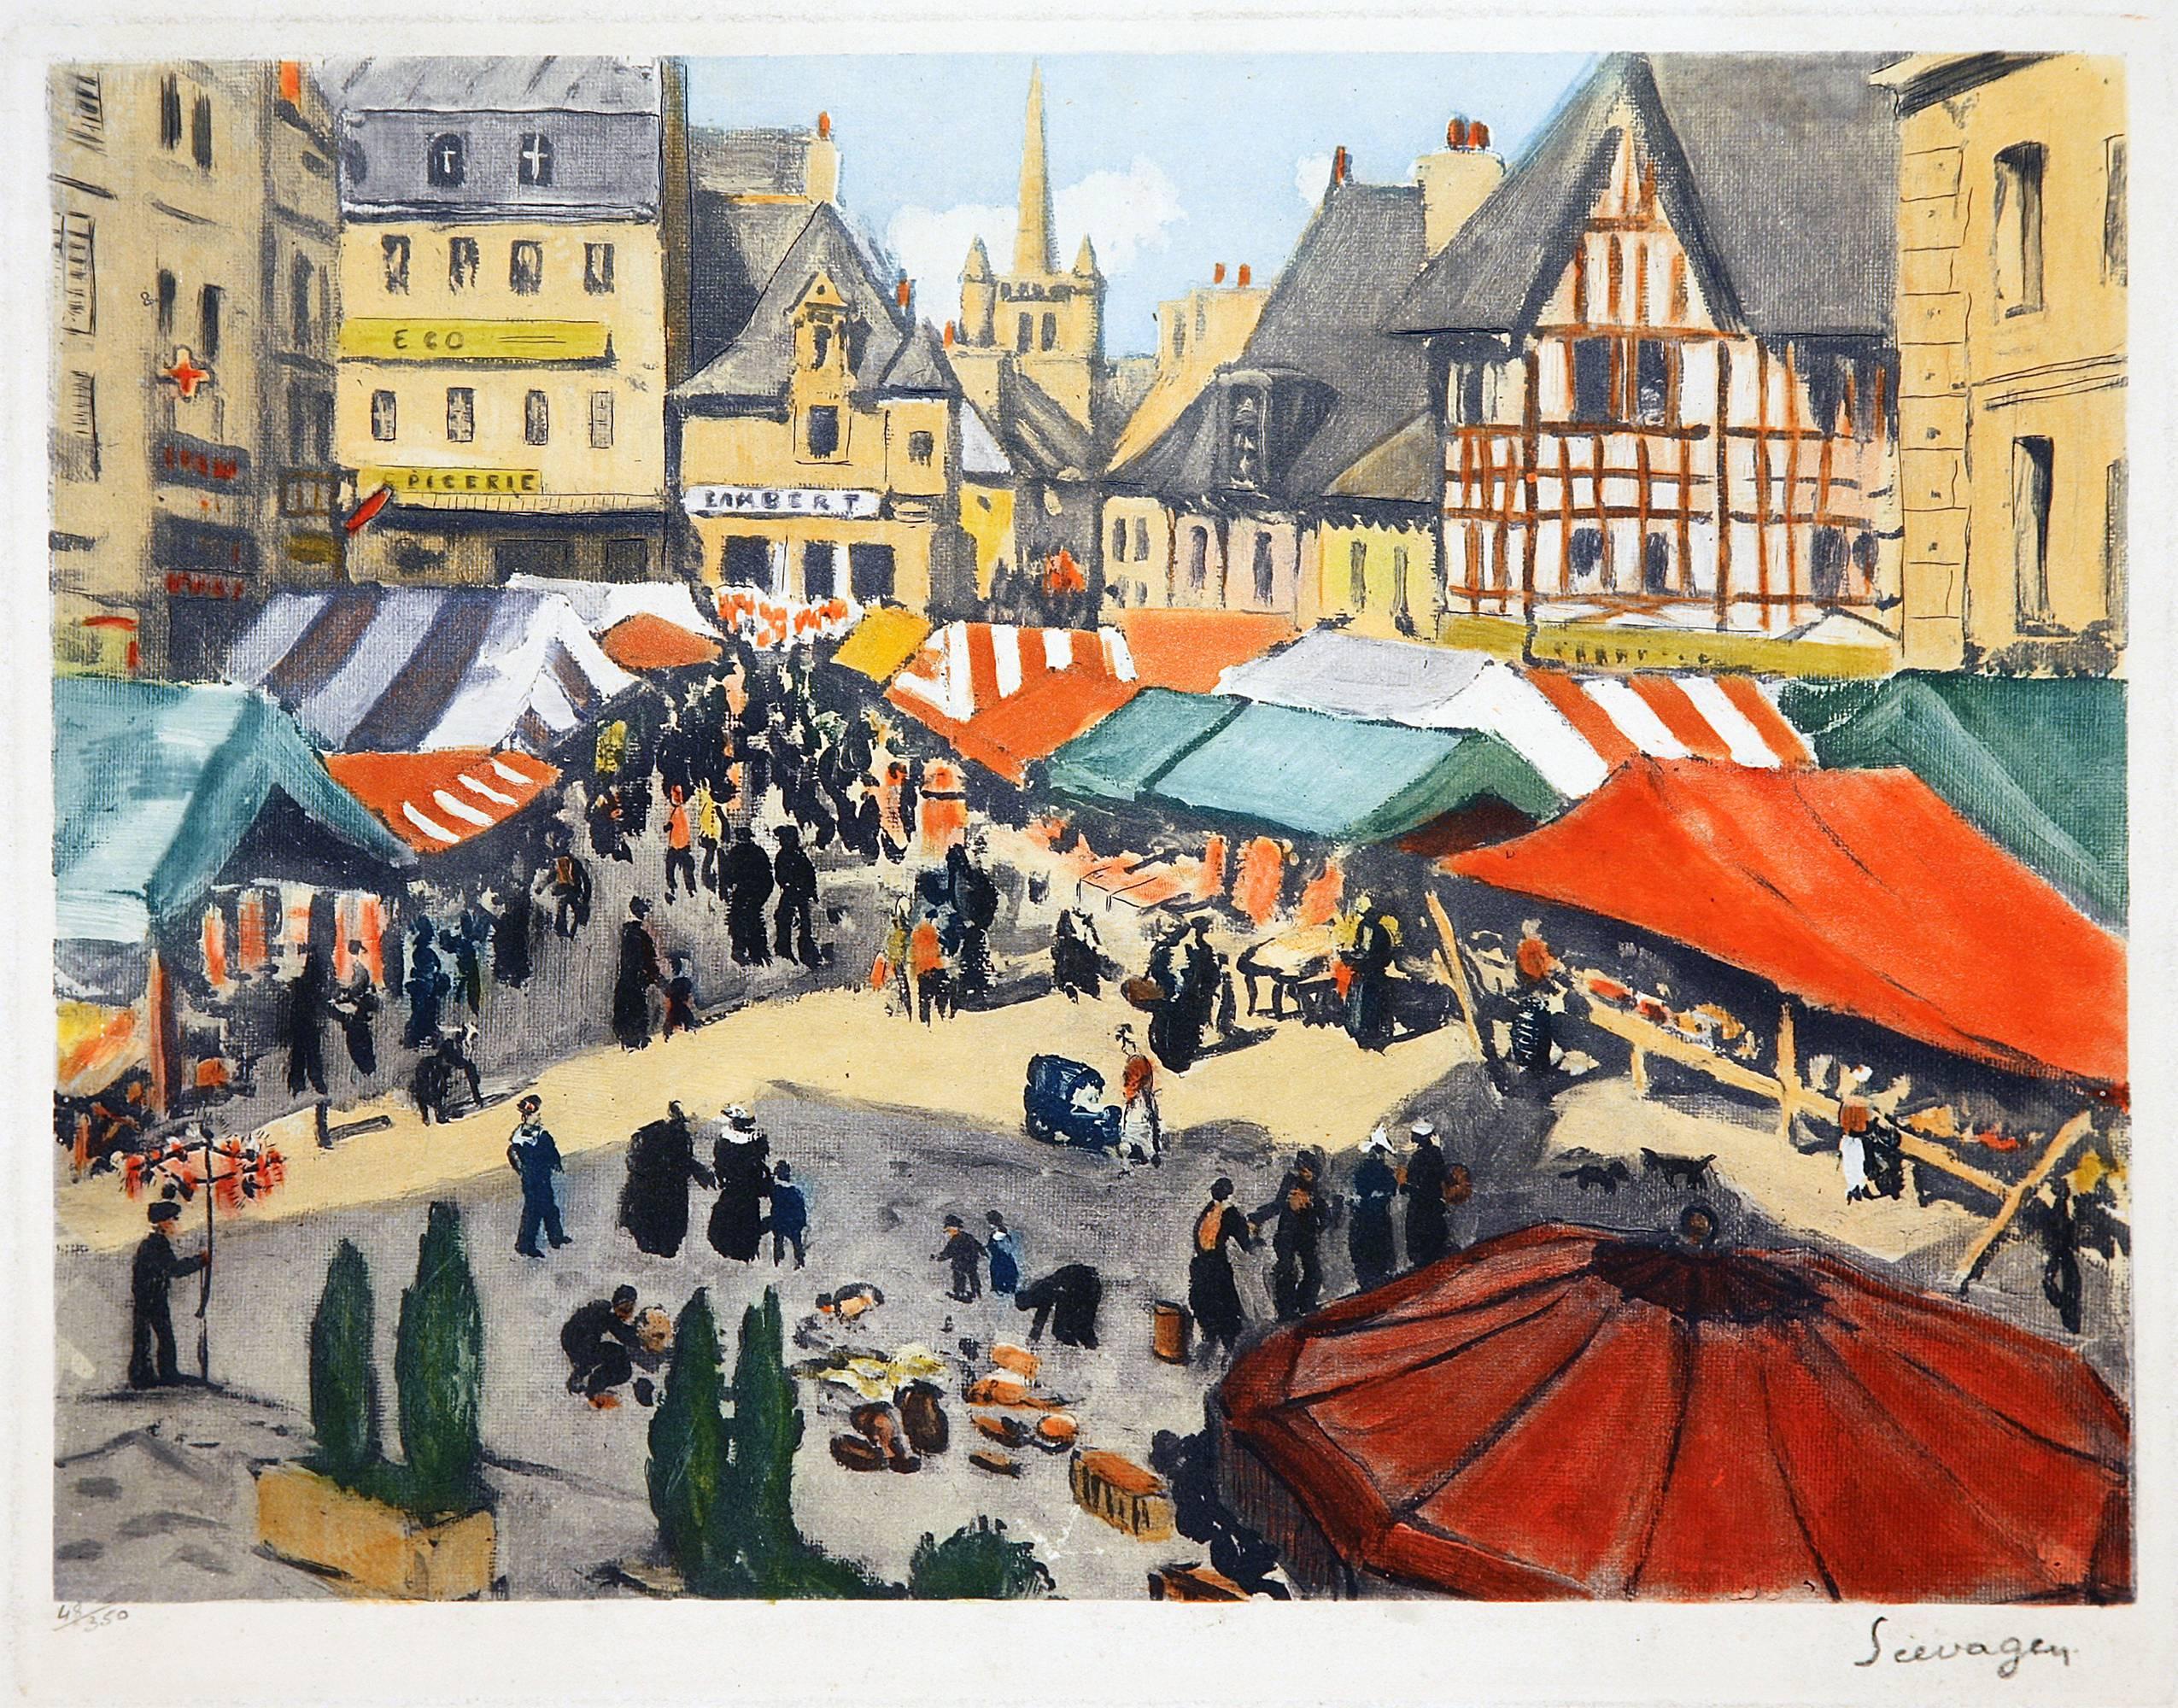 Lucien Seevagen Landscape Print - Outdoor Market in la Place du Martray à Paimpol, Côtes d'Armor, France